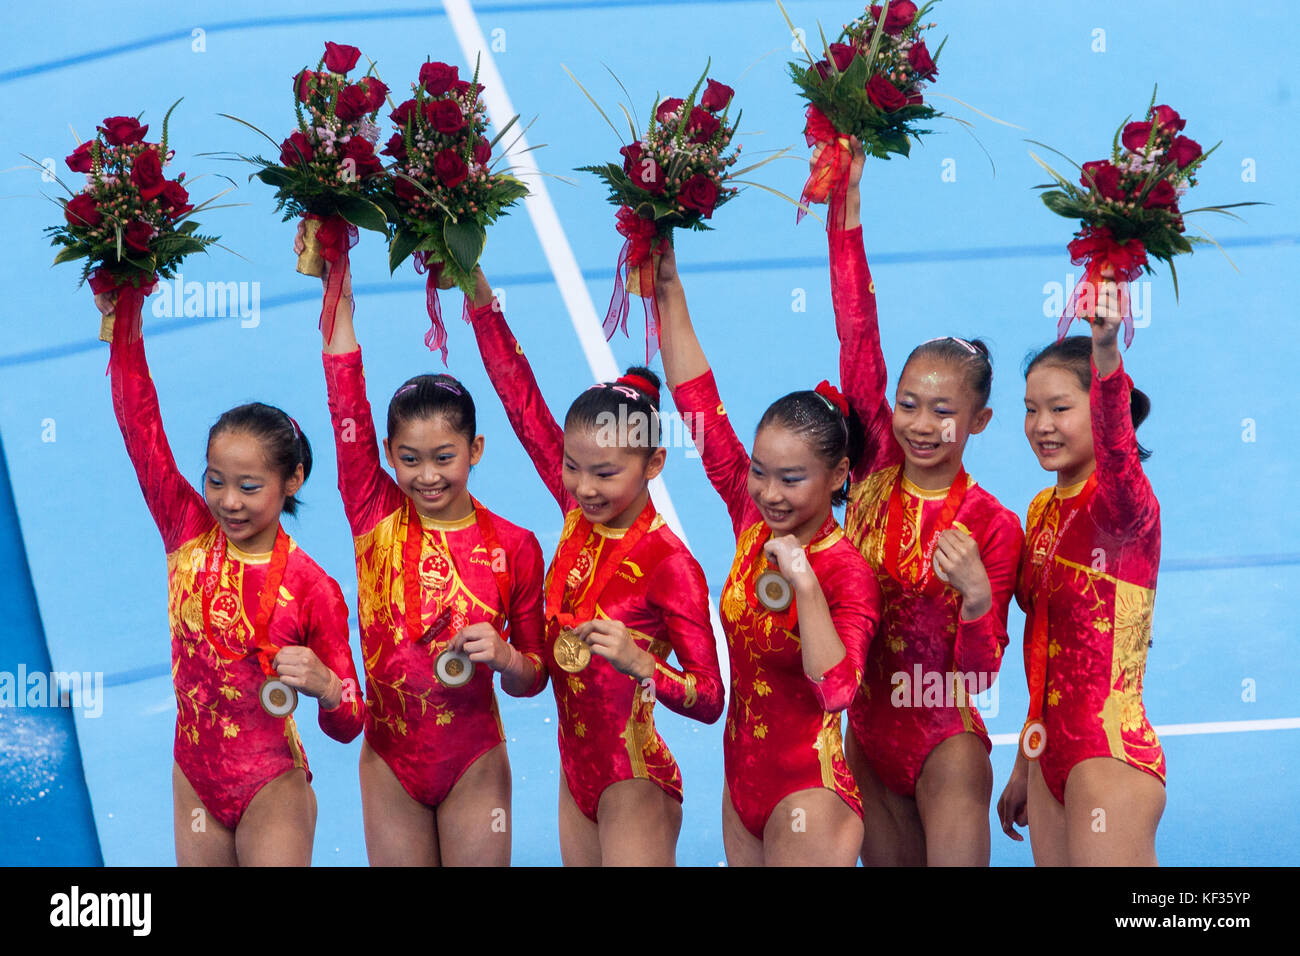 Médaille d'or de l'équipe Chine champions de l'équipe de gymnastique artistique femmes événement au Jeux olympiques d'été 2008, Pékin, Chine Banque D'Images